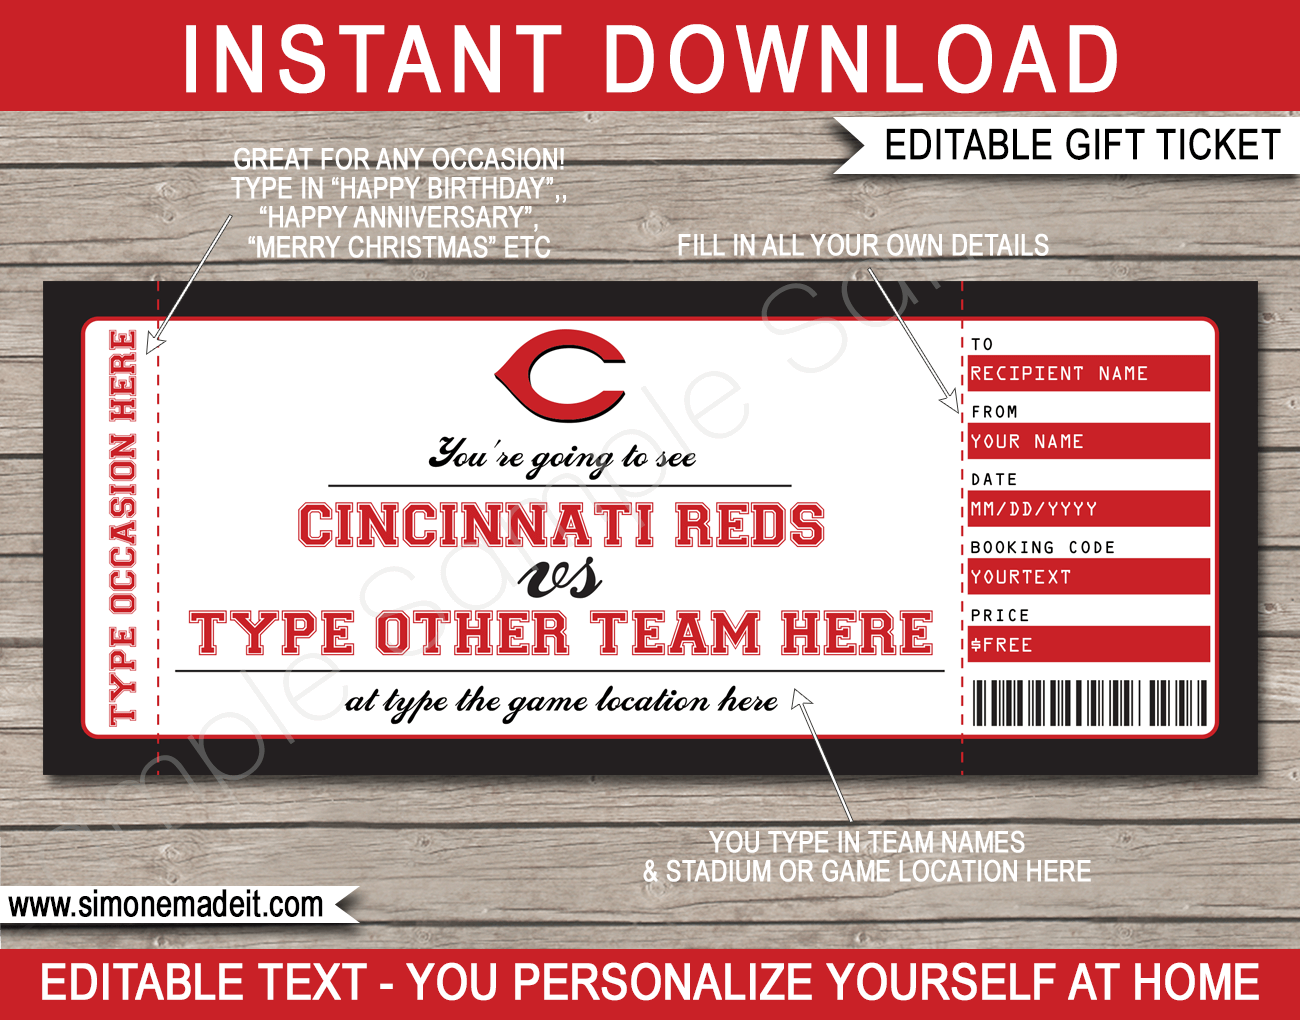 Cincinnati Reds' 2019 single-game tickets go on sale Monday